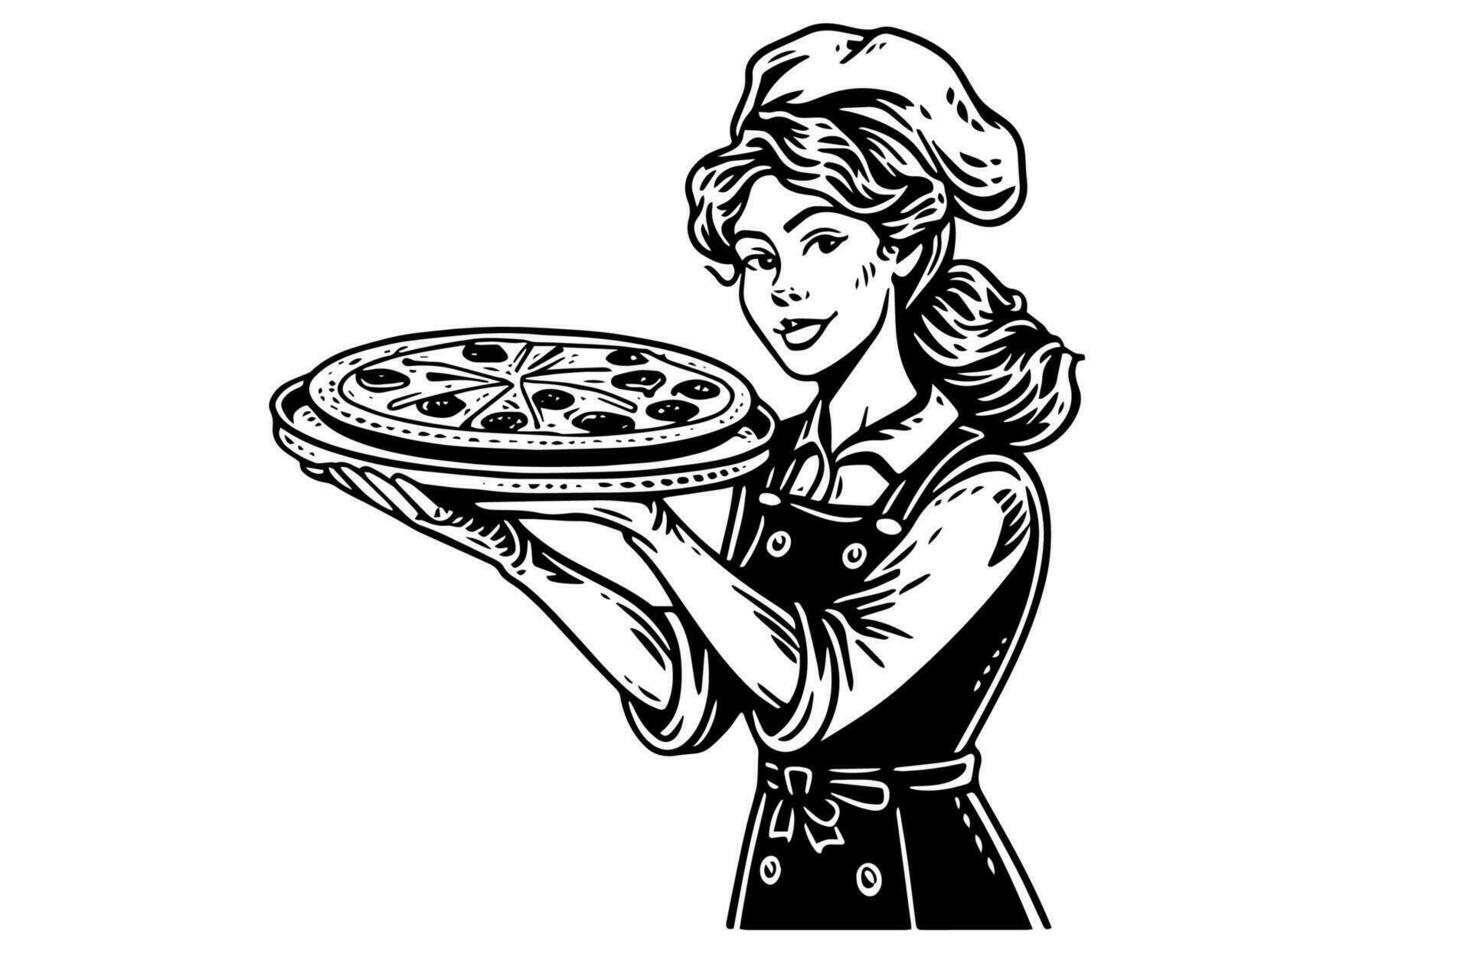 vrouw chef met pizza inkt schetsen in gravure stijl. tekening jong vrouw vector illustratie.